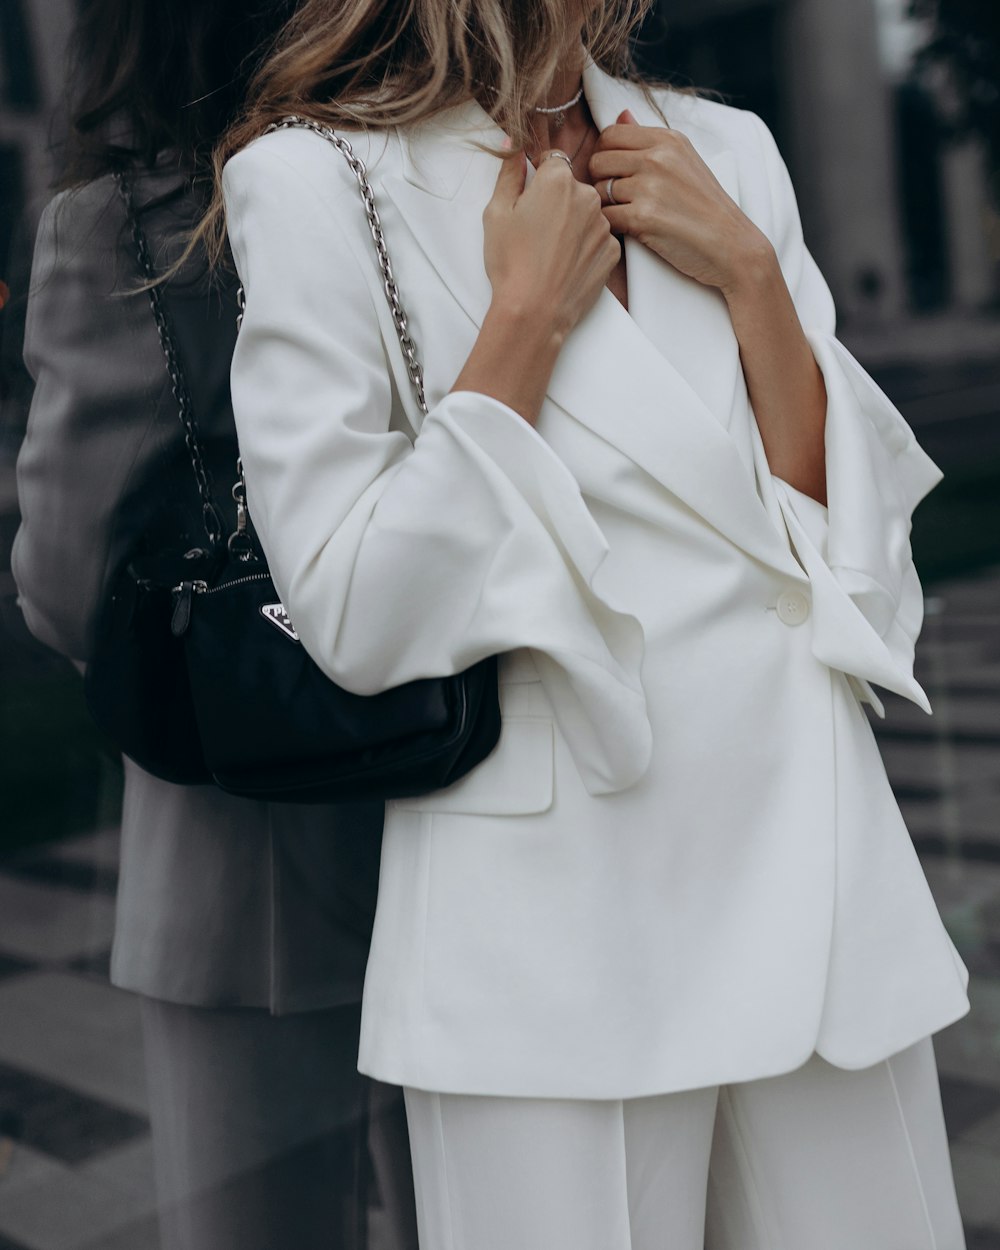 Una mujer vestida con un traje blanco y sosteniendo un bolso negro